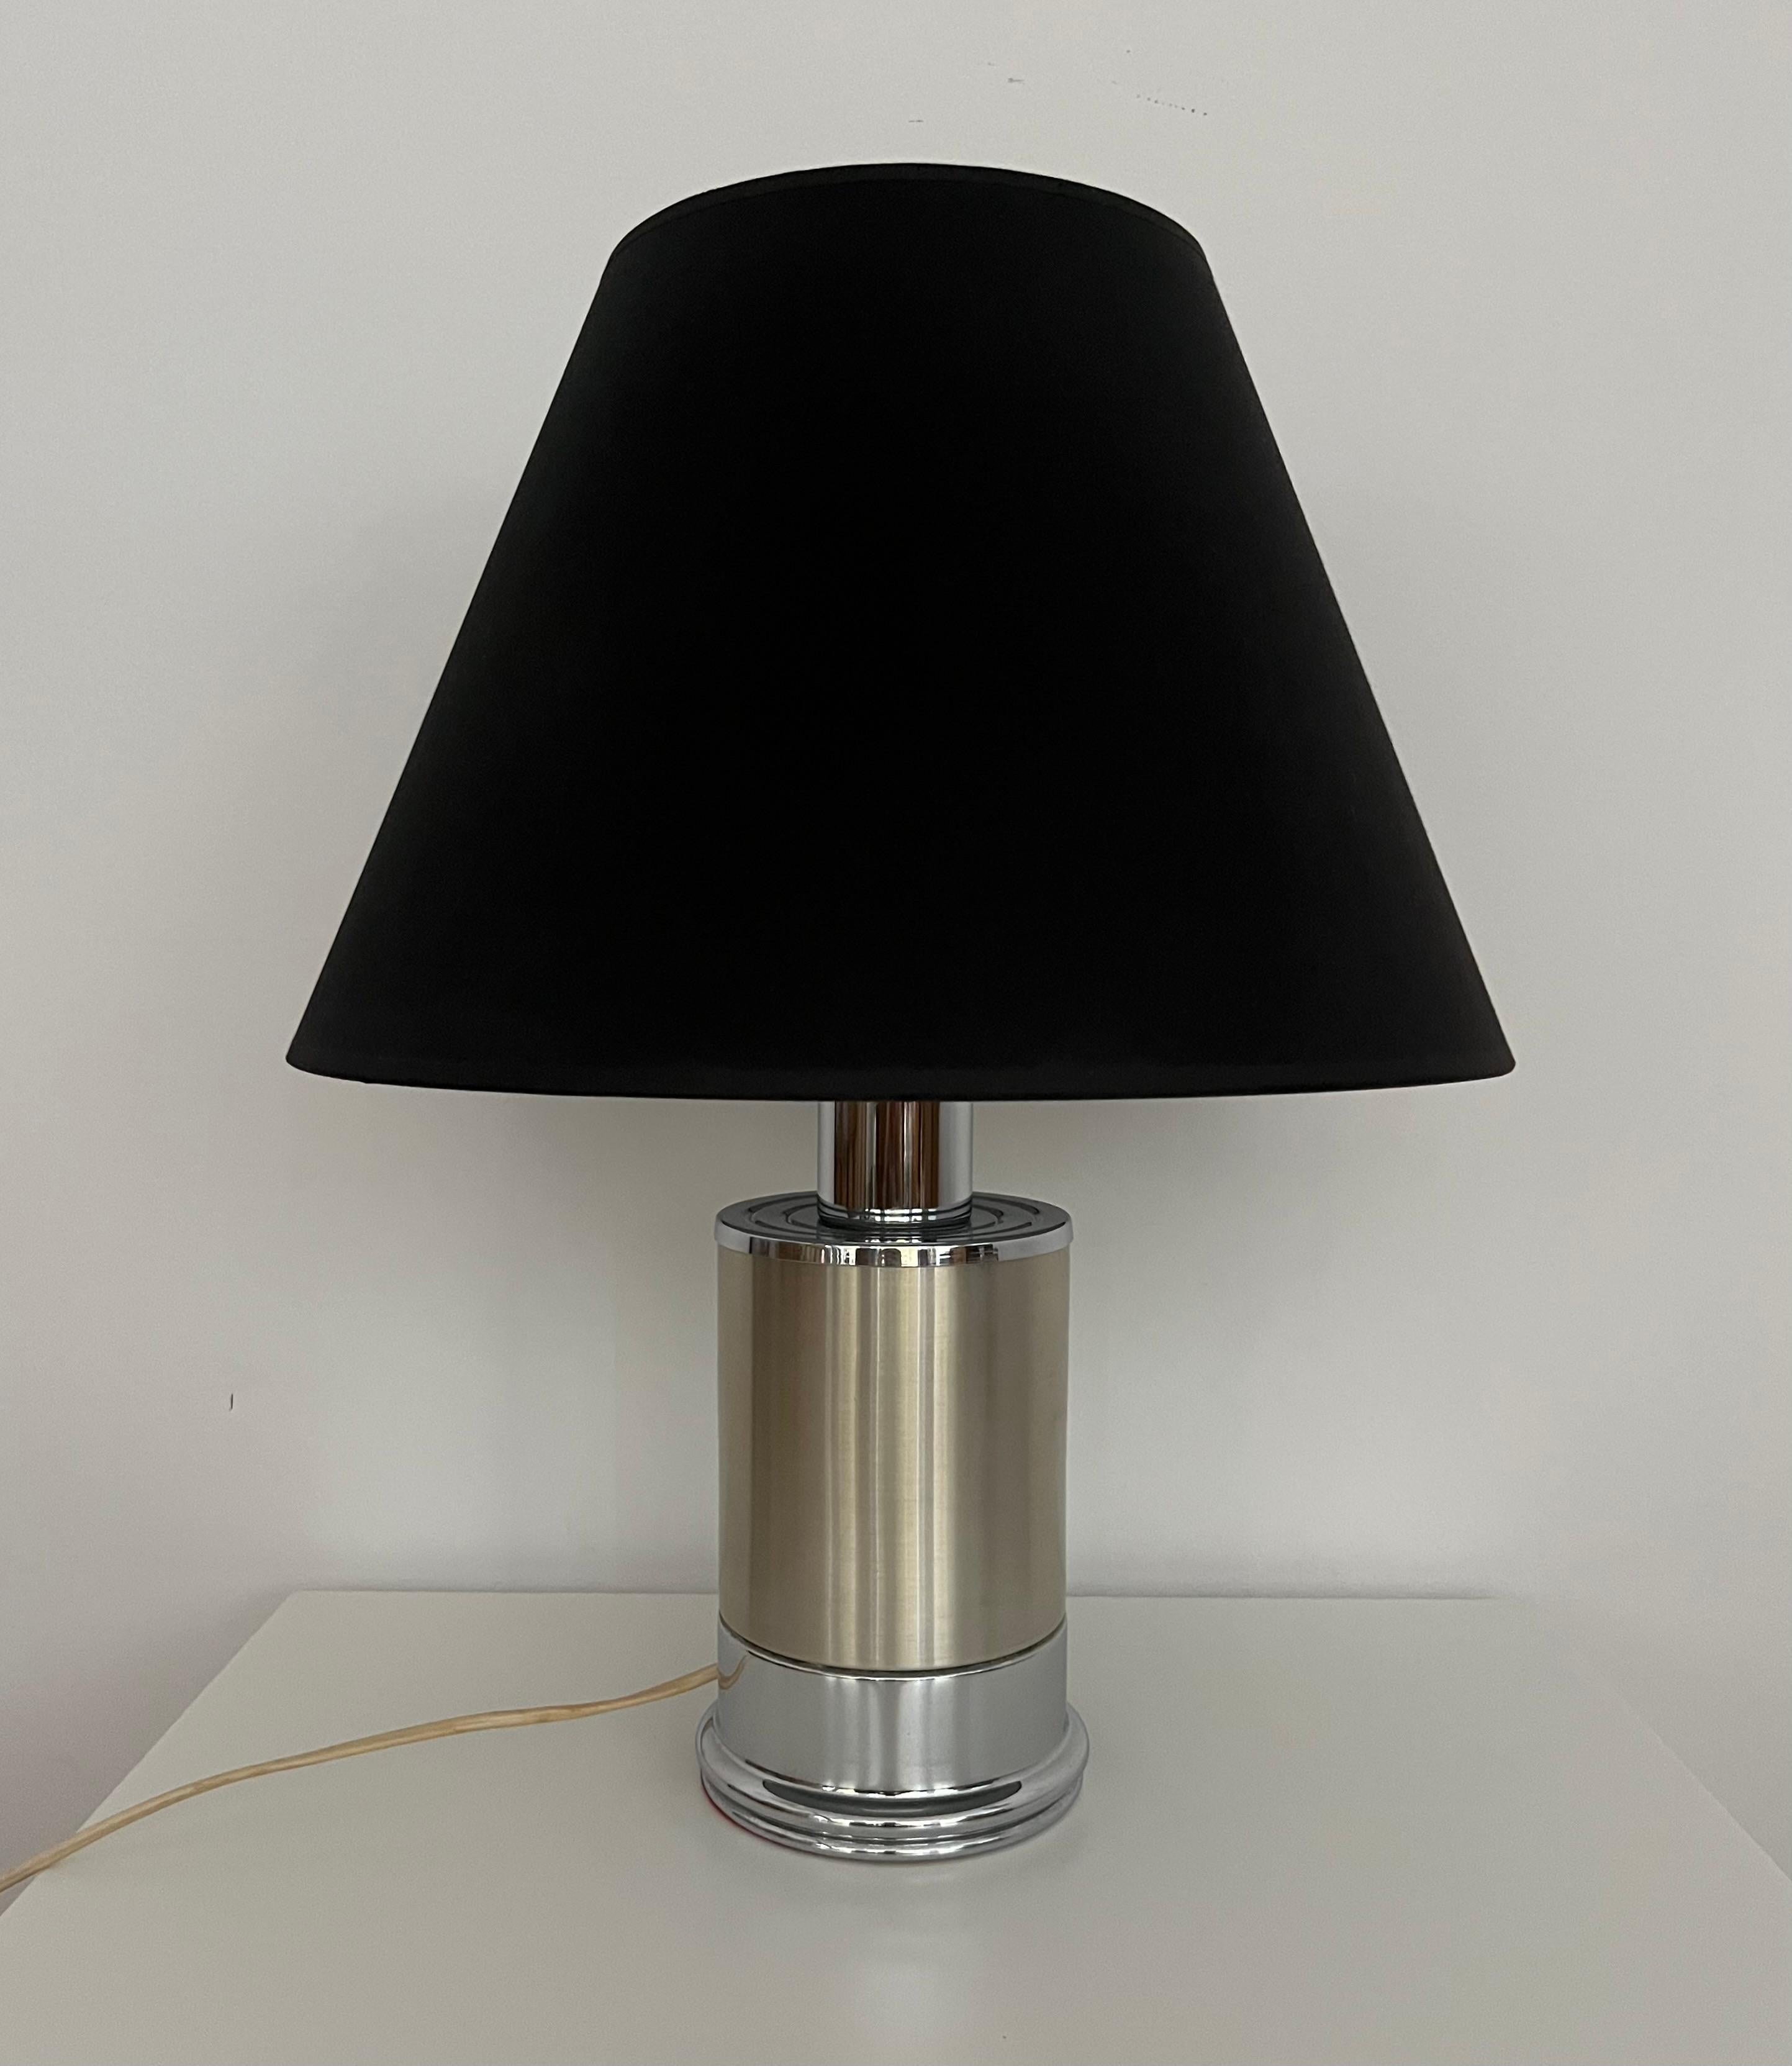 Charmante lampe de table italienne du milieu du siècle. Cette lampe de table a été conçue et fabriquée en Italie dans les années 1970. Abat-jour noir inclus.
Cette lampe est équipée d'une douille (E27). 
Un électricien professionnel a vérifié et